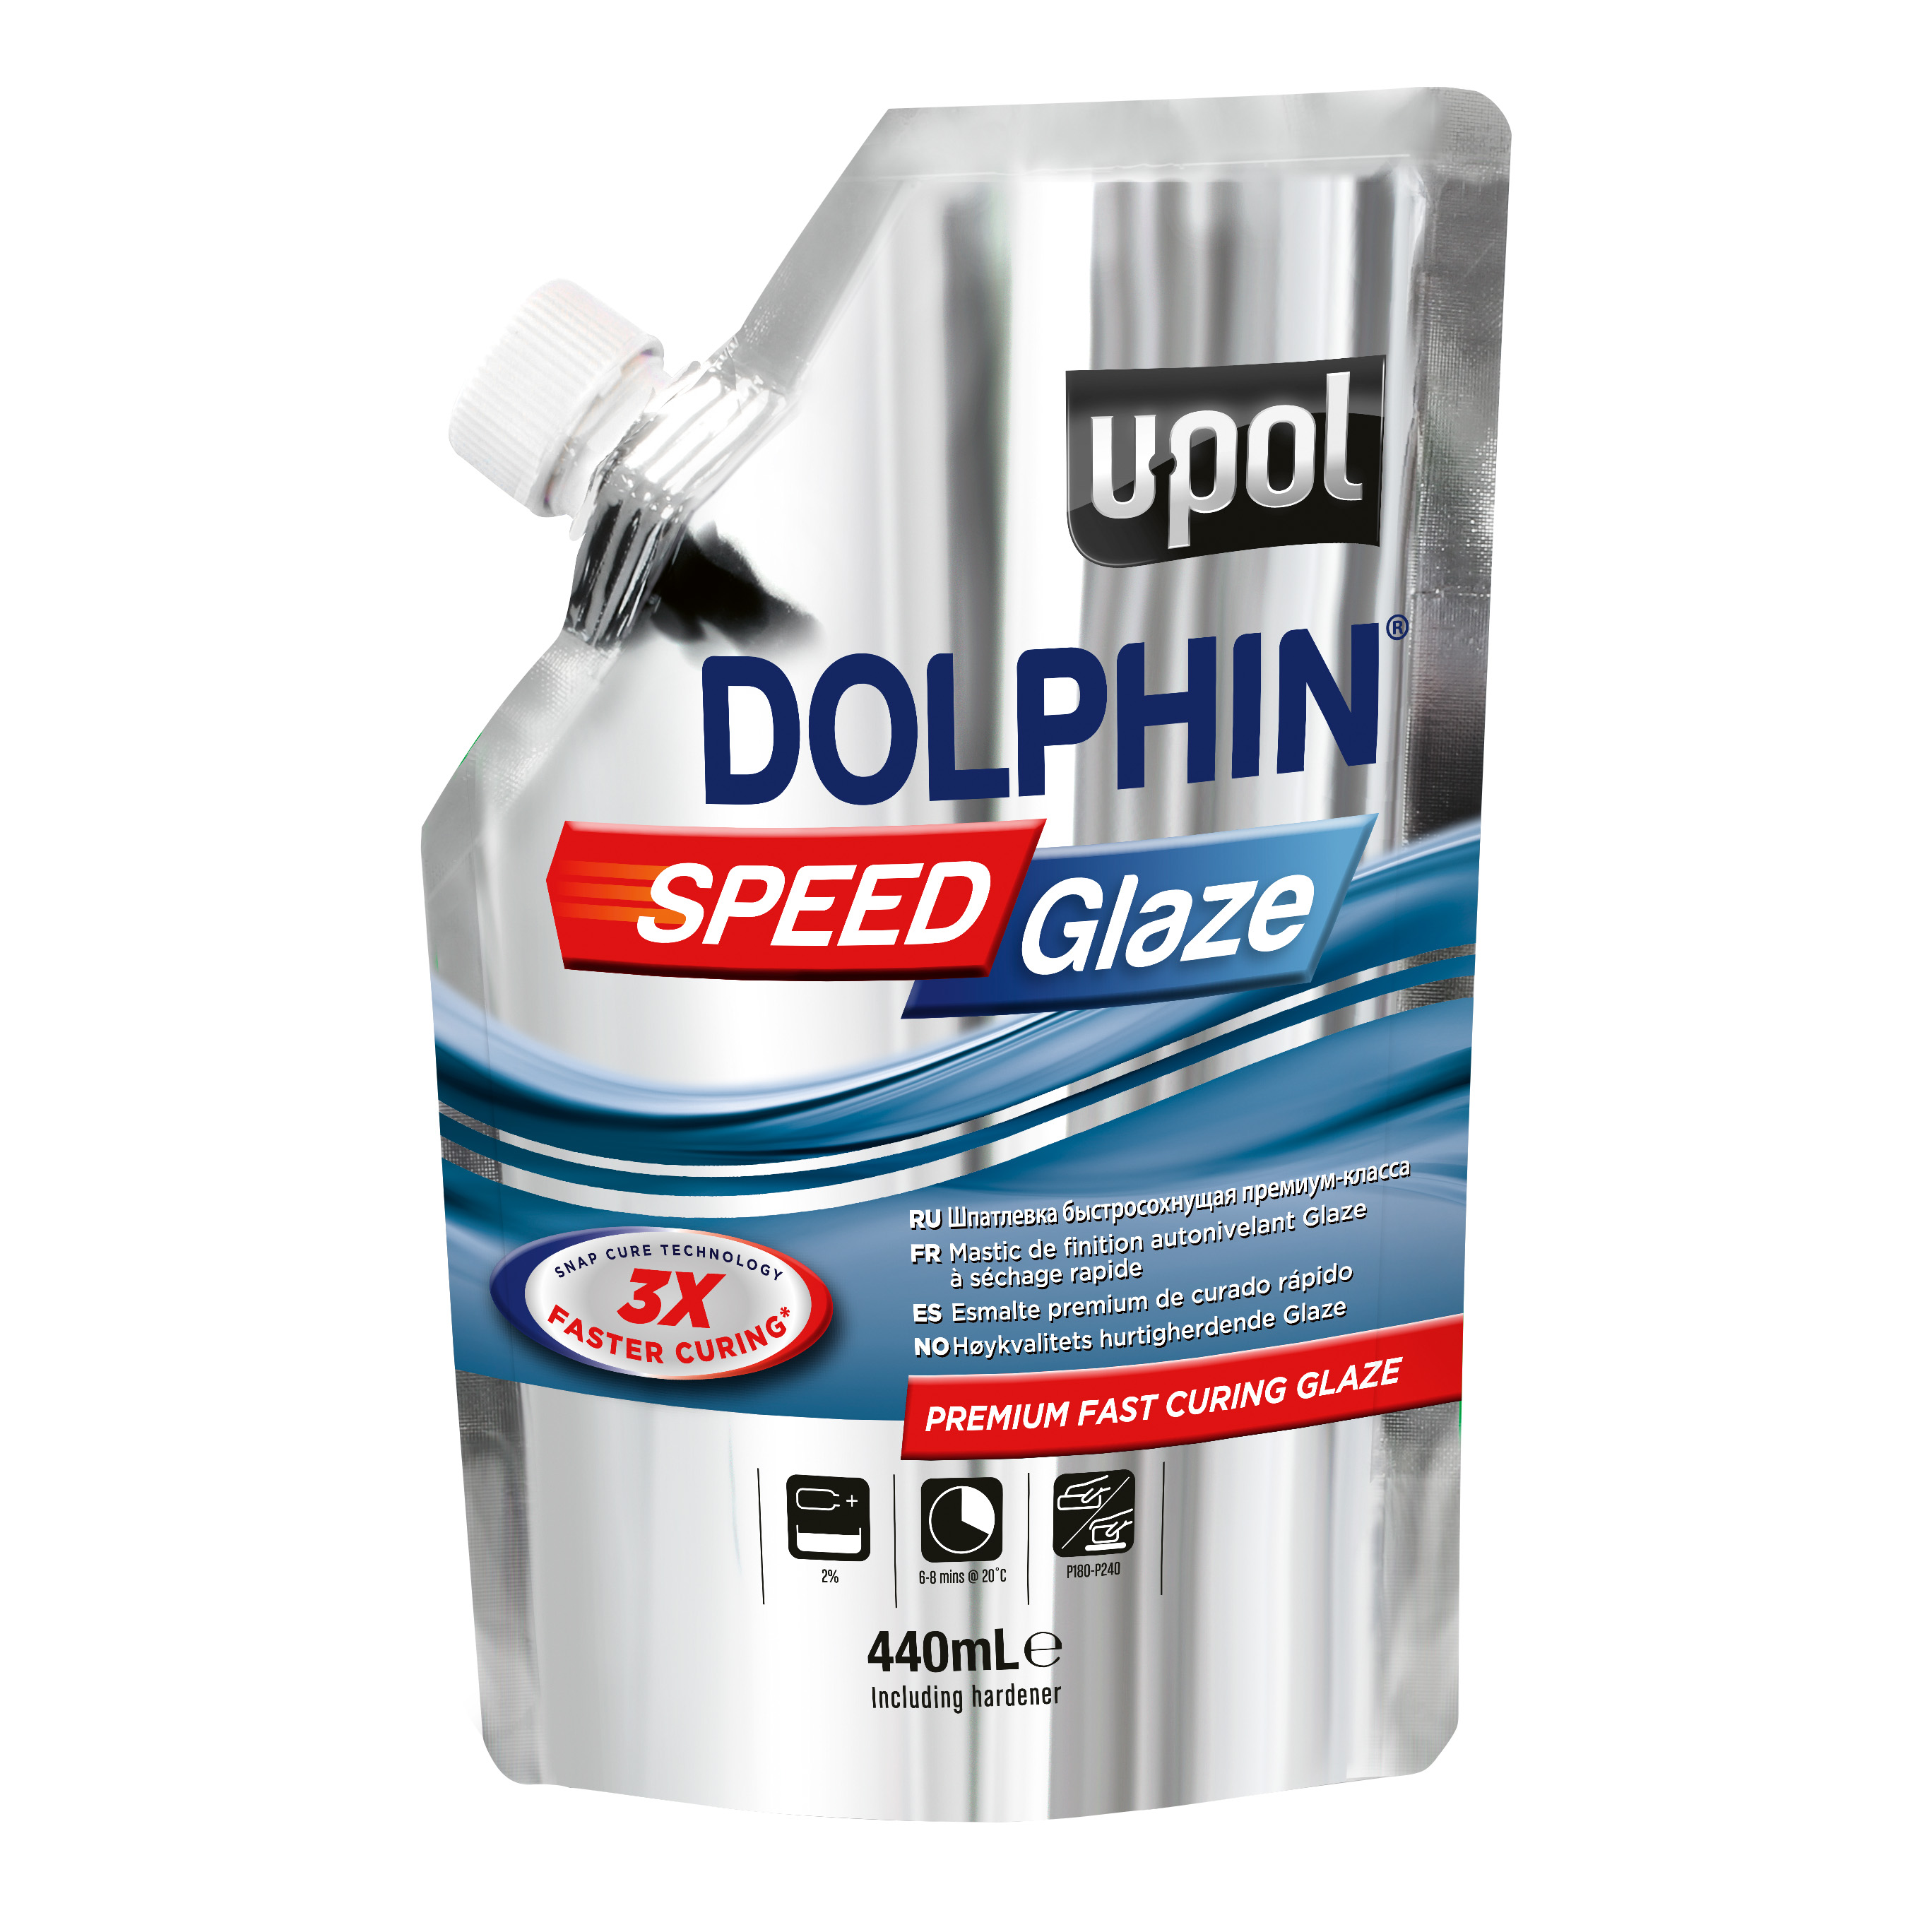 UPOL Dolphin Speed Glaze, Premium schnellhärtender Spachtel